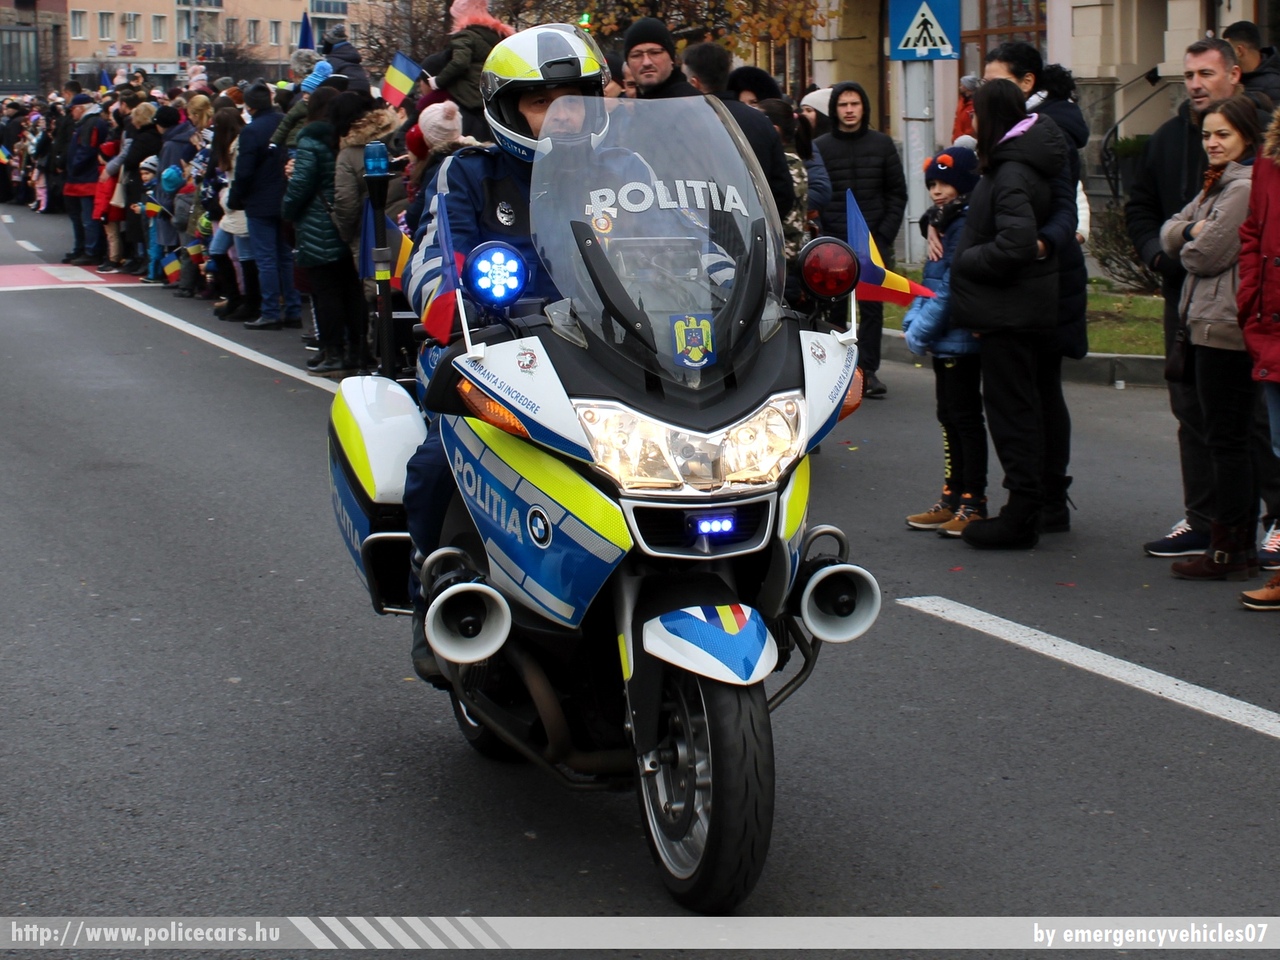 BMW, Politia, fotó: emergencyvehicles07
Keywords: rendőr rendőrmotor rendőrség police policebike policemotorcycle Román Románia romanian